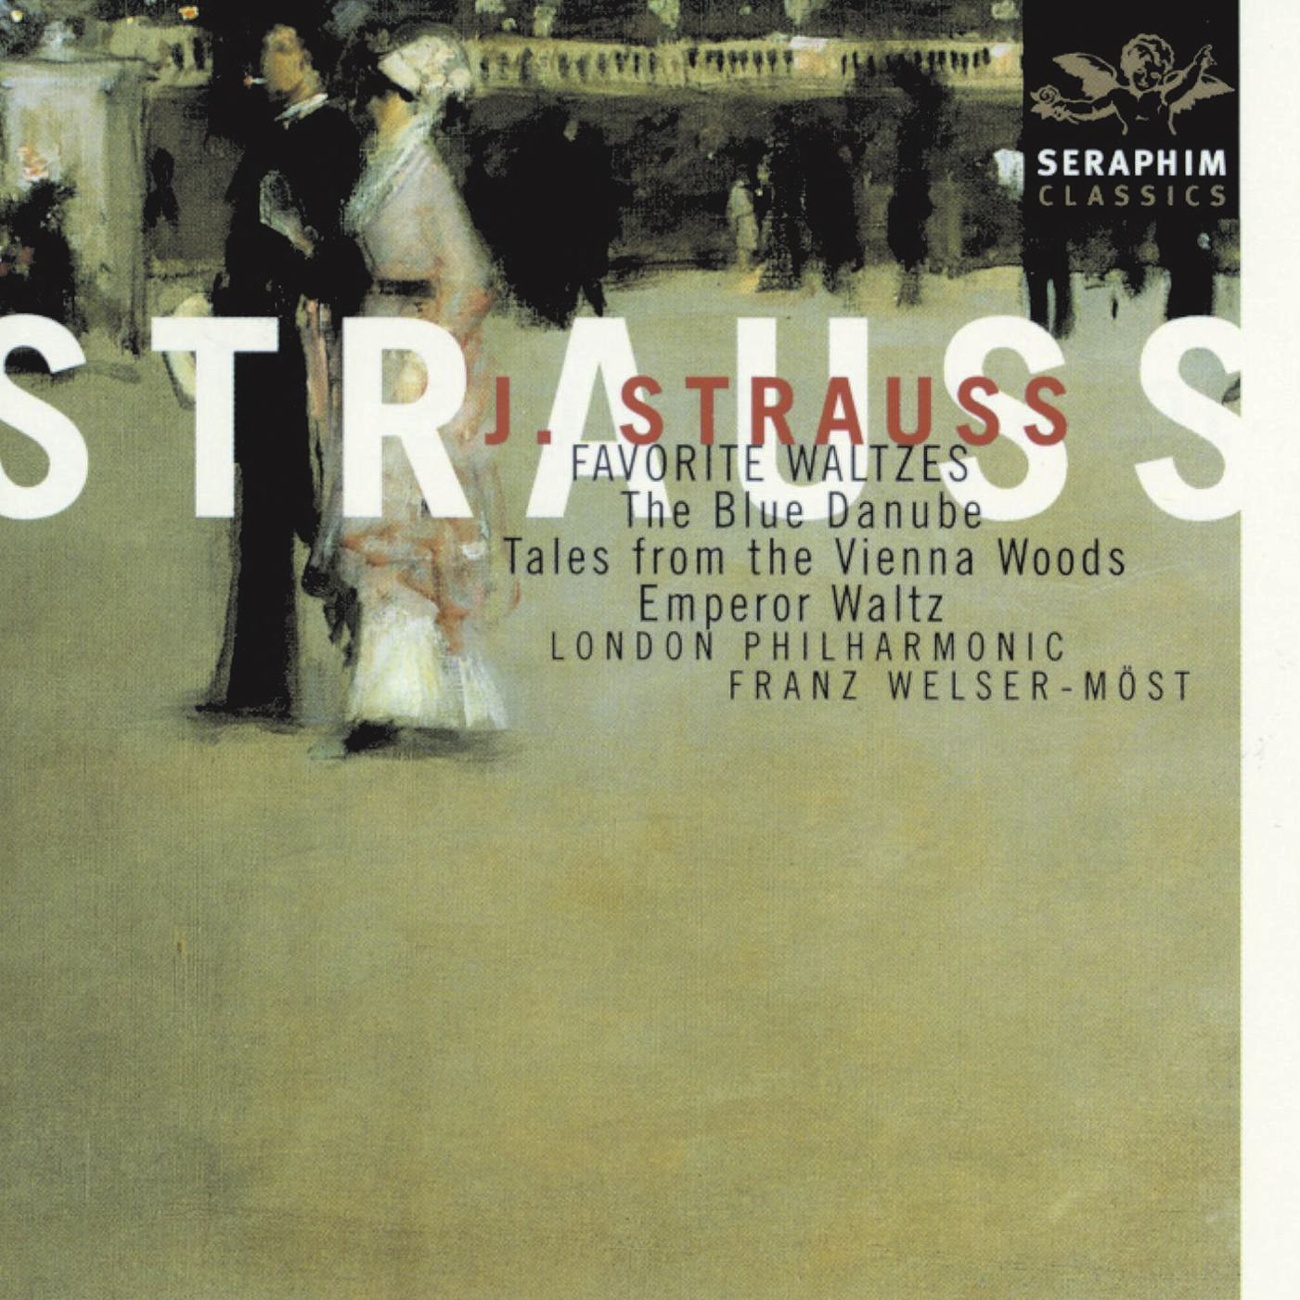 Strauss II - Favorite Waltzes